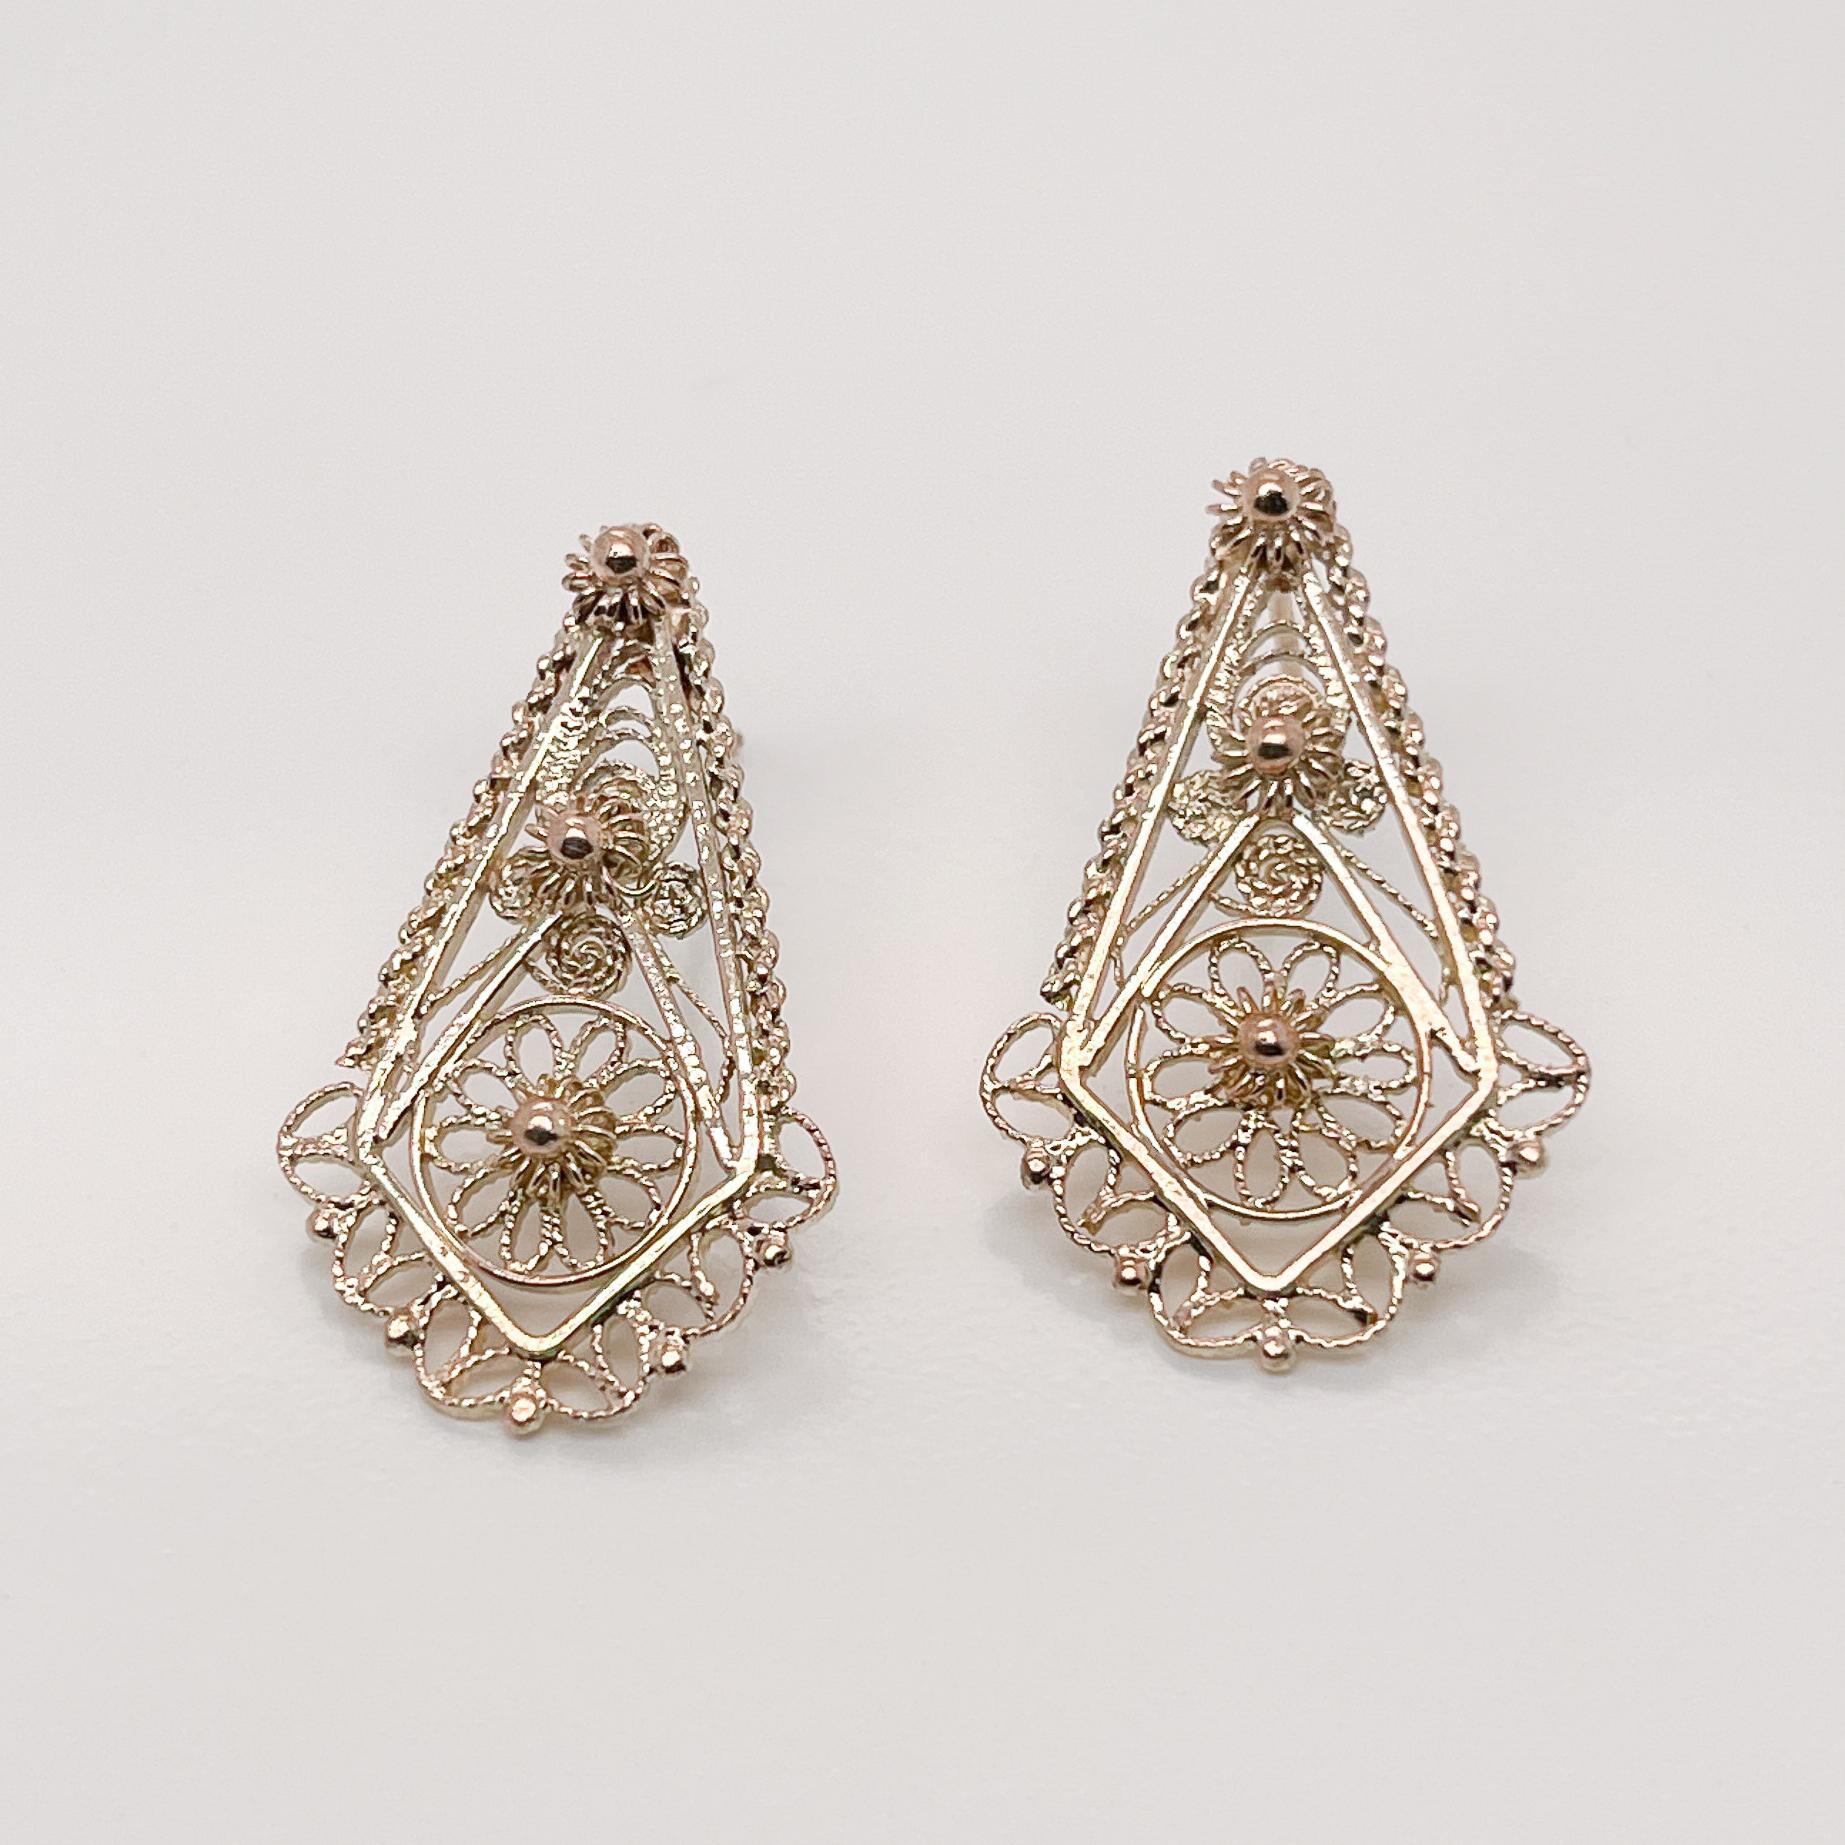 Ein Paar sehr feine Ohrringe aus 14k Gold.

Mit feinem Goldfiligran in stilisierten Blumenmustern im Stil der etruskischen Wiedergeburt.

Einfach schöne Ohrringe!

Allgemeiner Zustand:
Sie sind in einem insgesamt guten, wie abgebildet, gebrauchten